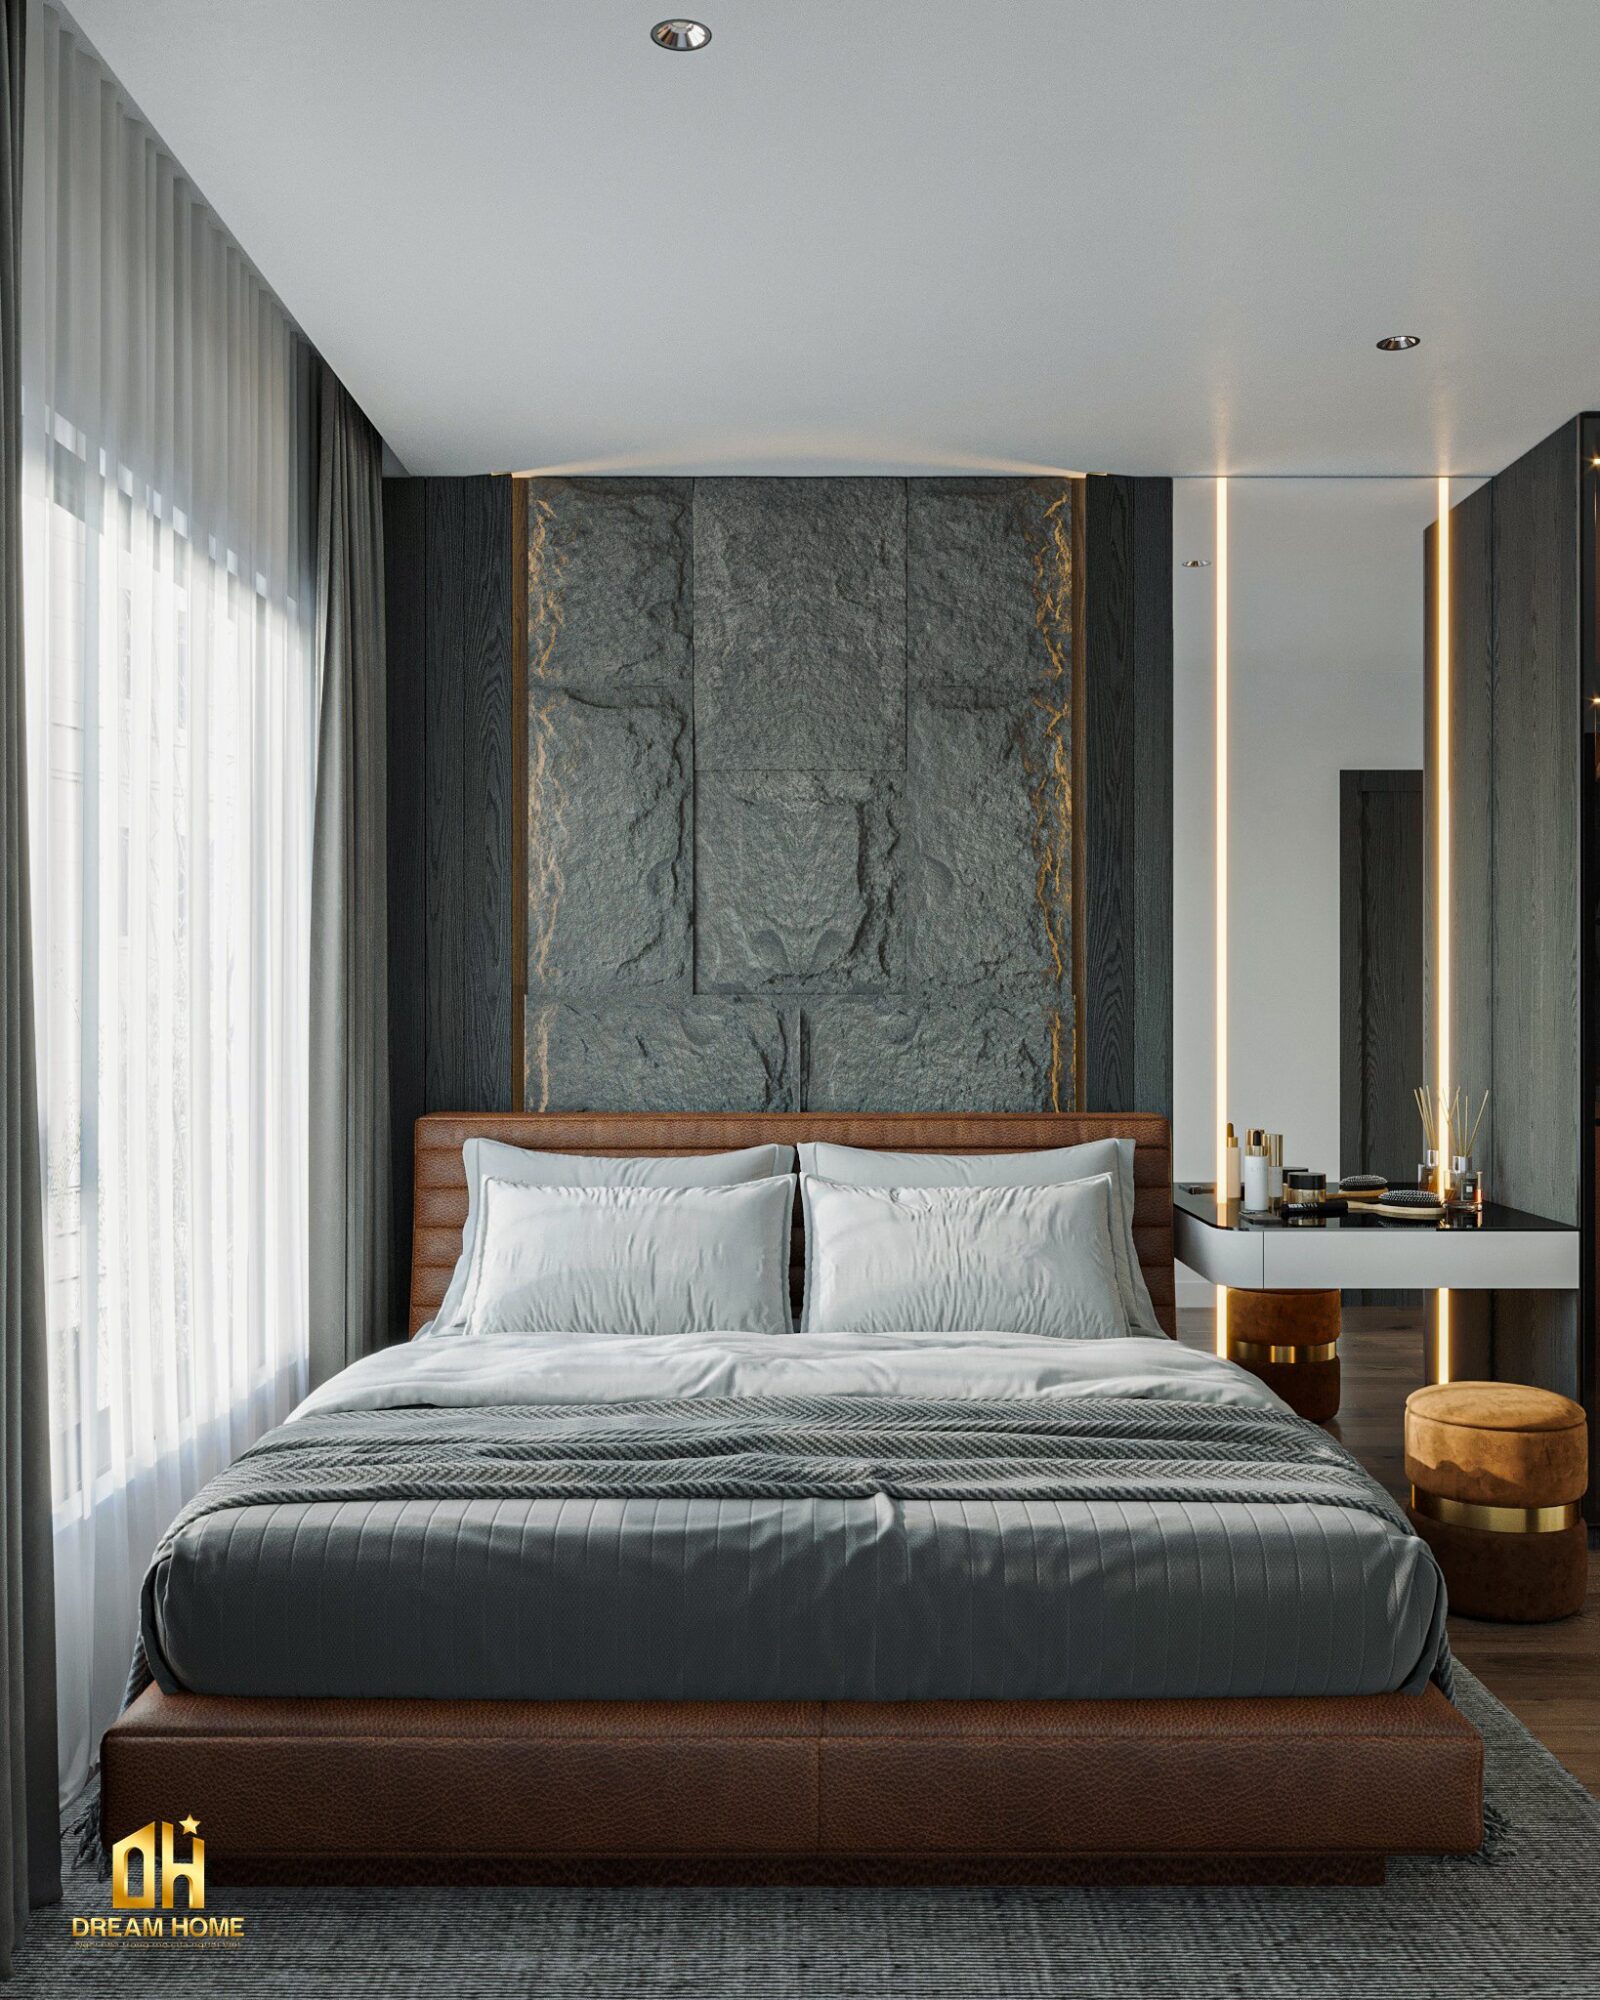 Giường được bọc da màu nâu cam tạo ra sự ấm áp và thoải mái, đồng thời phản ánh sự sang trọng và đẳng cấp. 